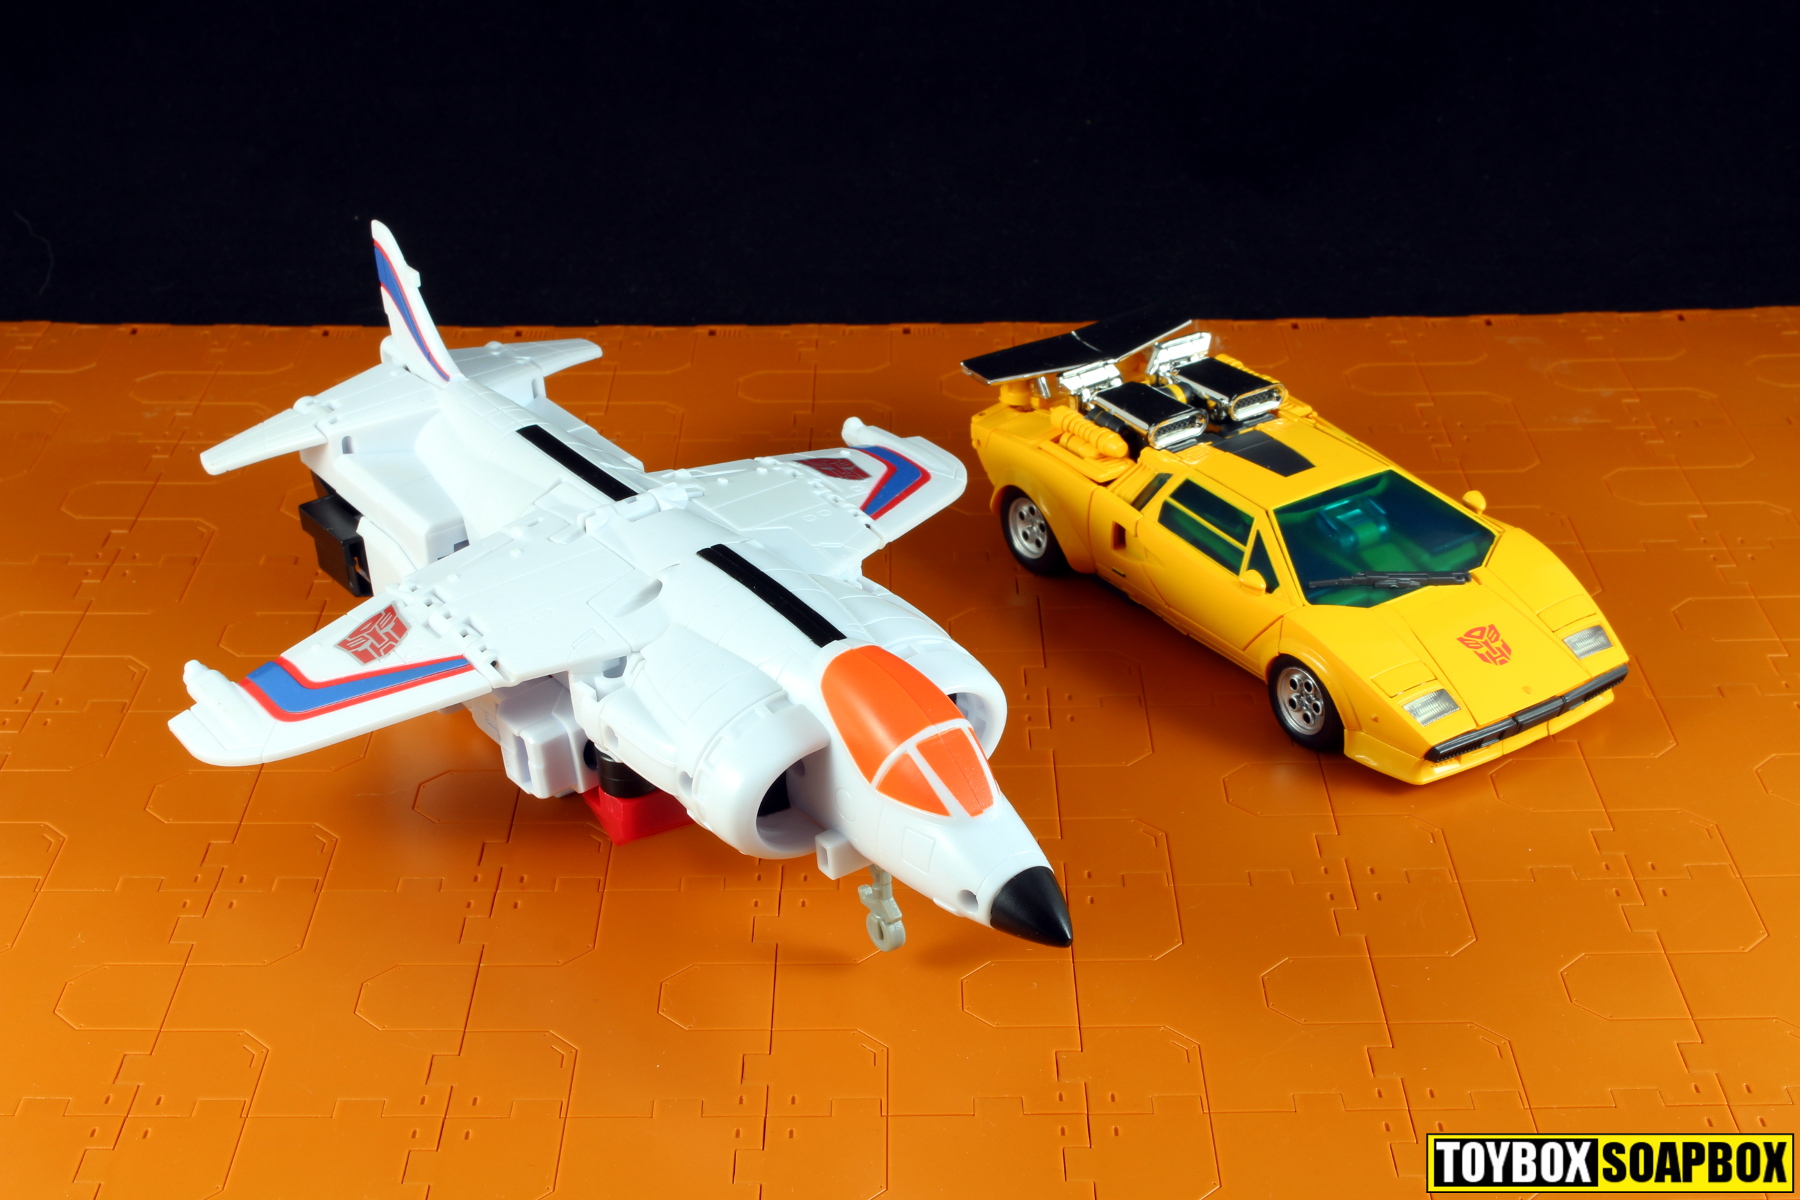 Super Wings Toys, Jett Transformer Toys de 5 pulgadas, ju